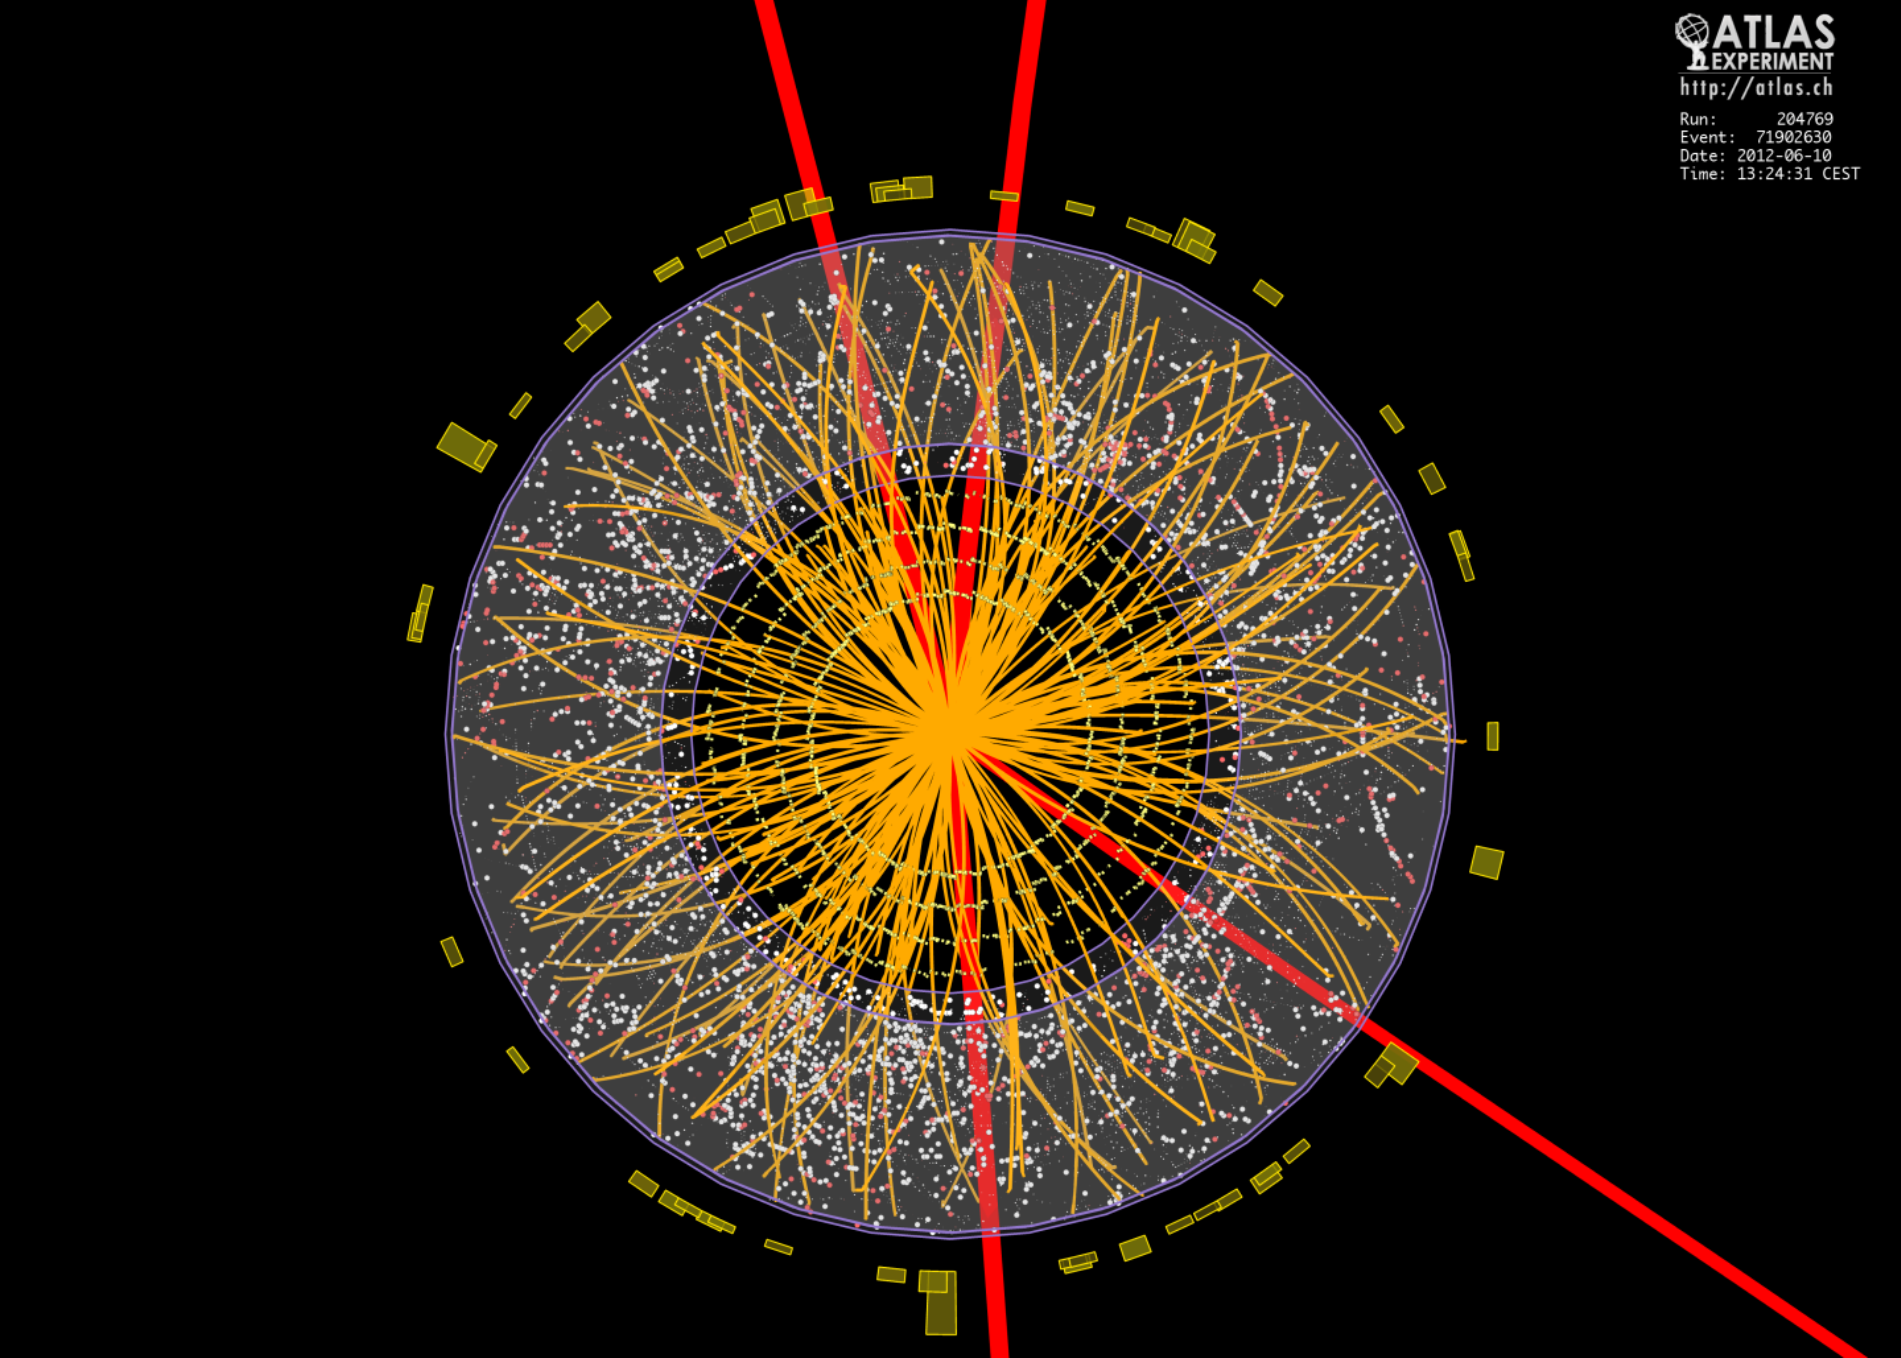 Cette image montre, reconstituée à l'ordinateur après filtrage de bien des évènements parasites, la désintégration d'un boson de Brout-Englert-Higgs au cœur du détecteur Atlas du LHC. Le boson a donné quatre particules chargées, des muons dont les trajectoires ont été colorées en rouge. © Cern, Collaboration Atlas